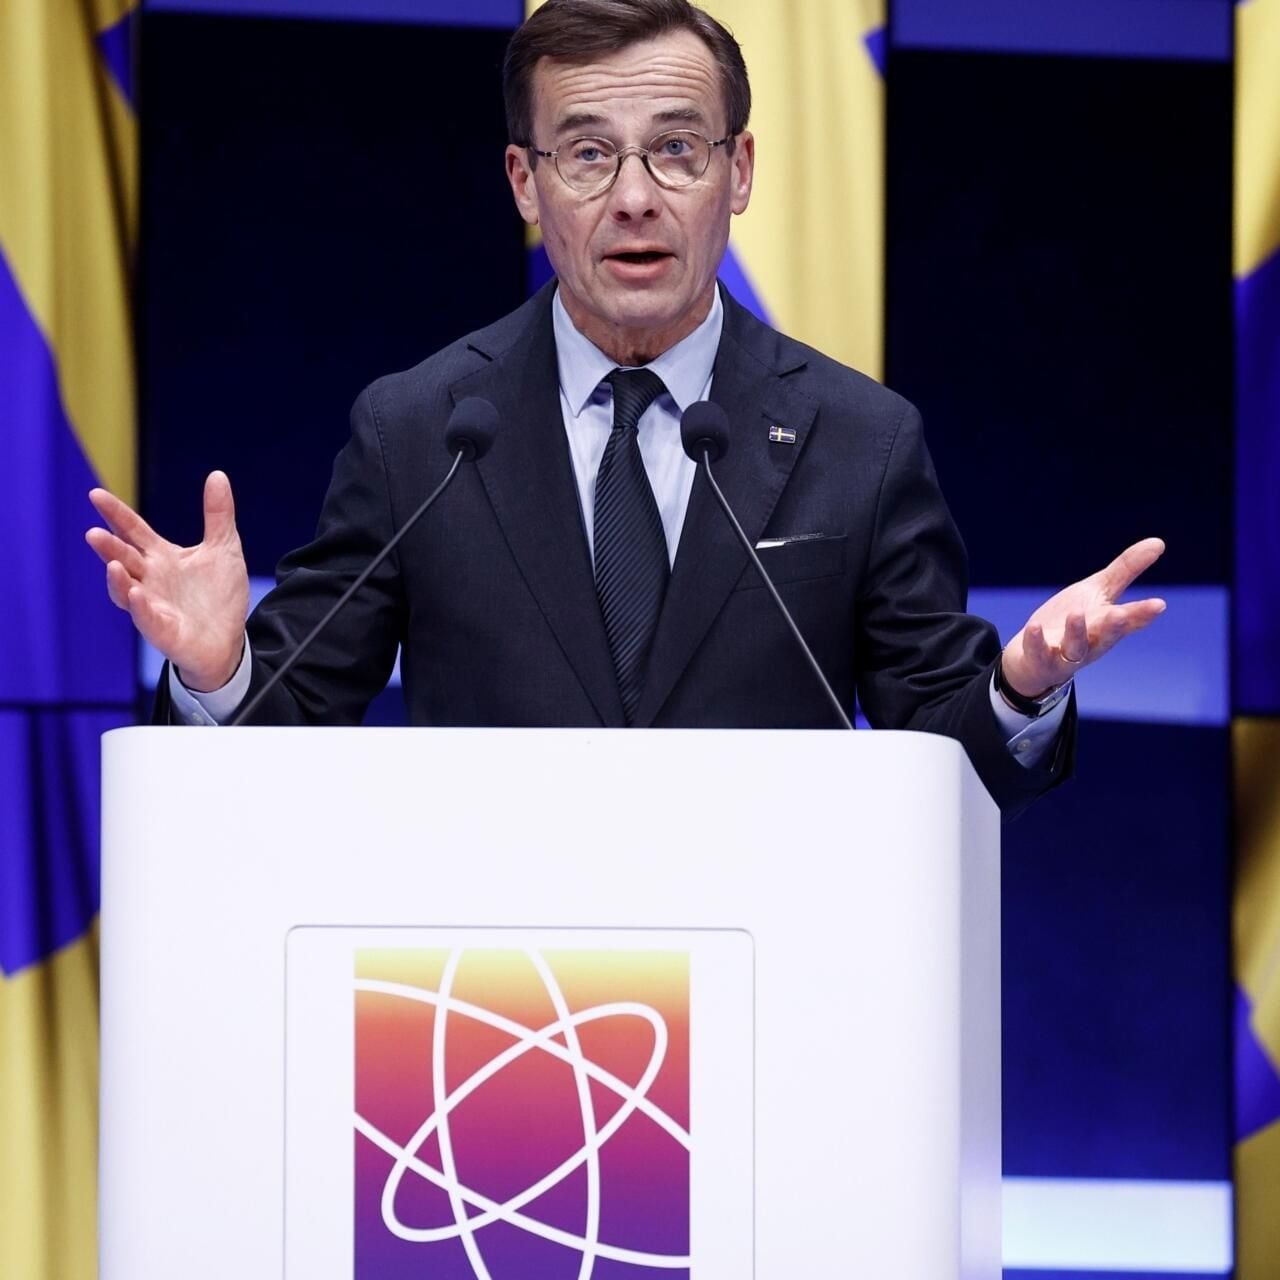 Cumbre en Bruselas marca retorno de energía nuclear en agenda global